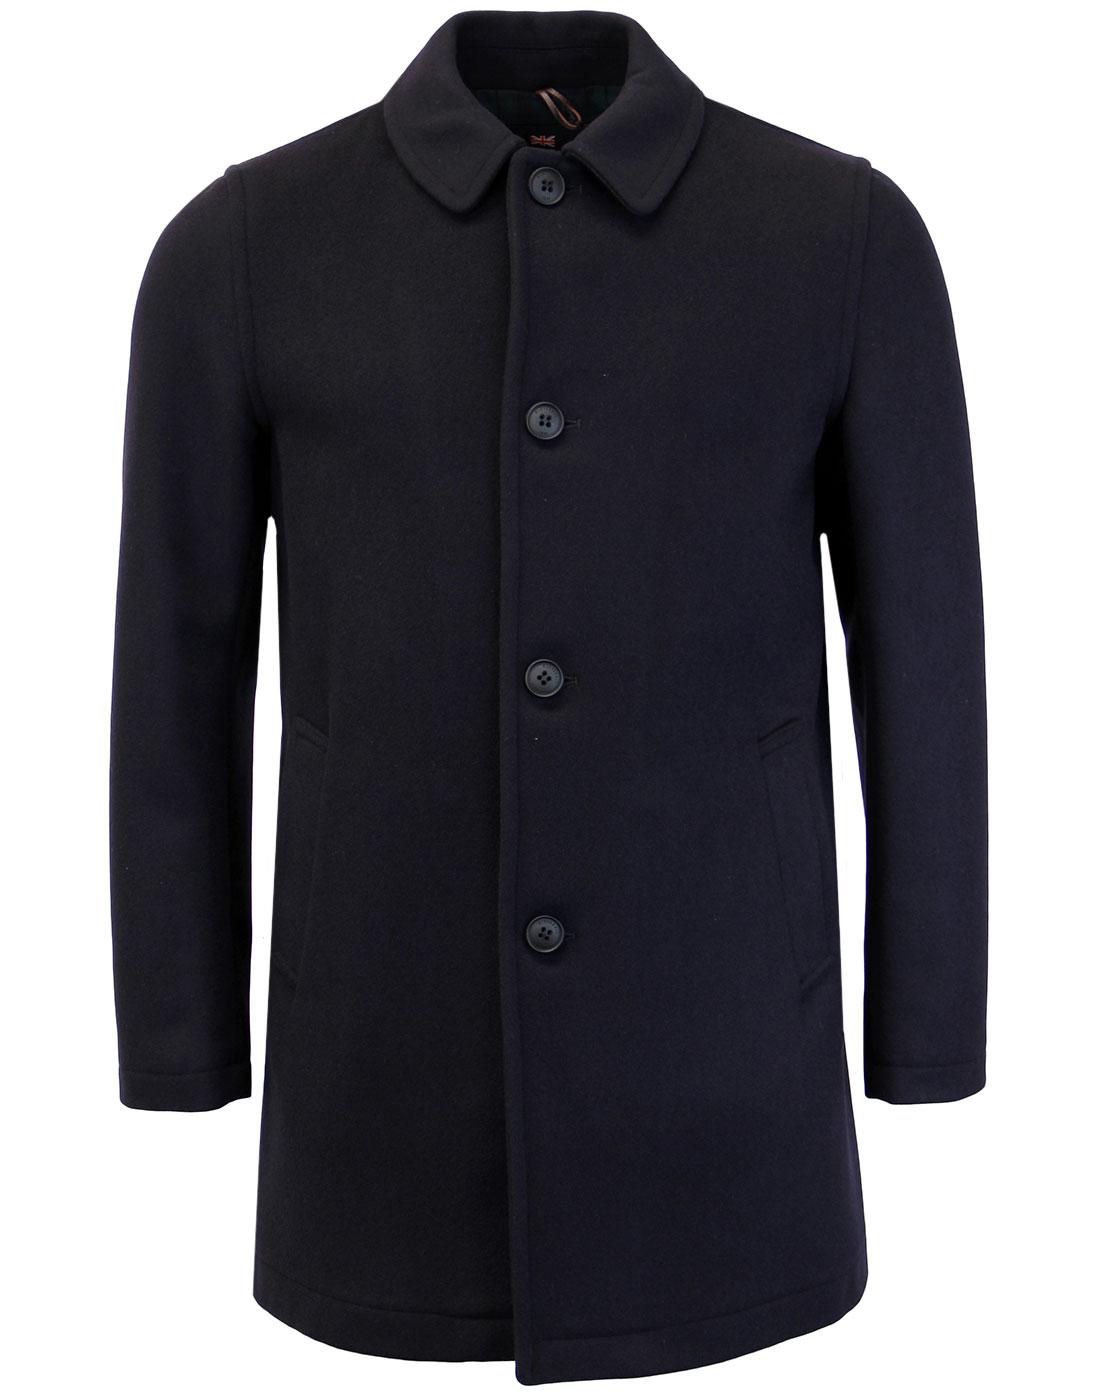 Gloverall Duffle Coats & Jackets For Men | Atom Retro